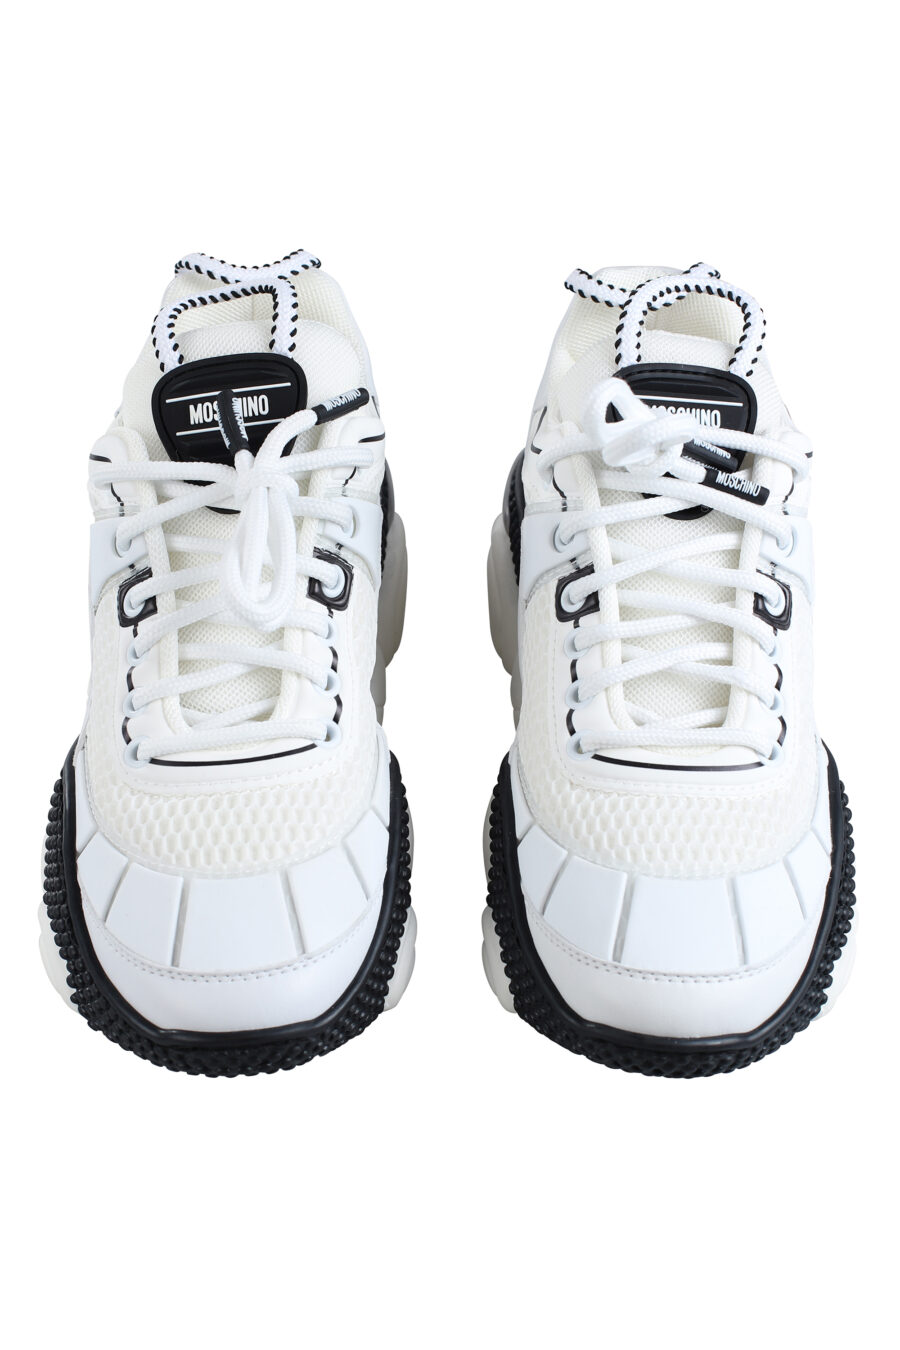 Zapatillas blancas con negro con rejilla "bolla35" - IMG 2010